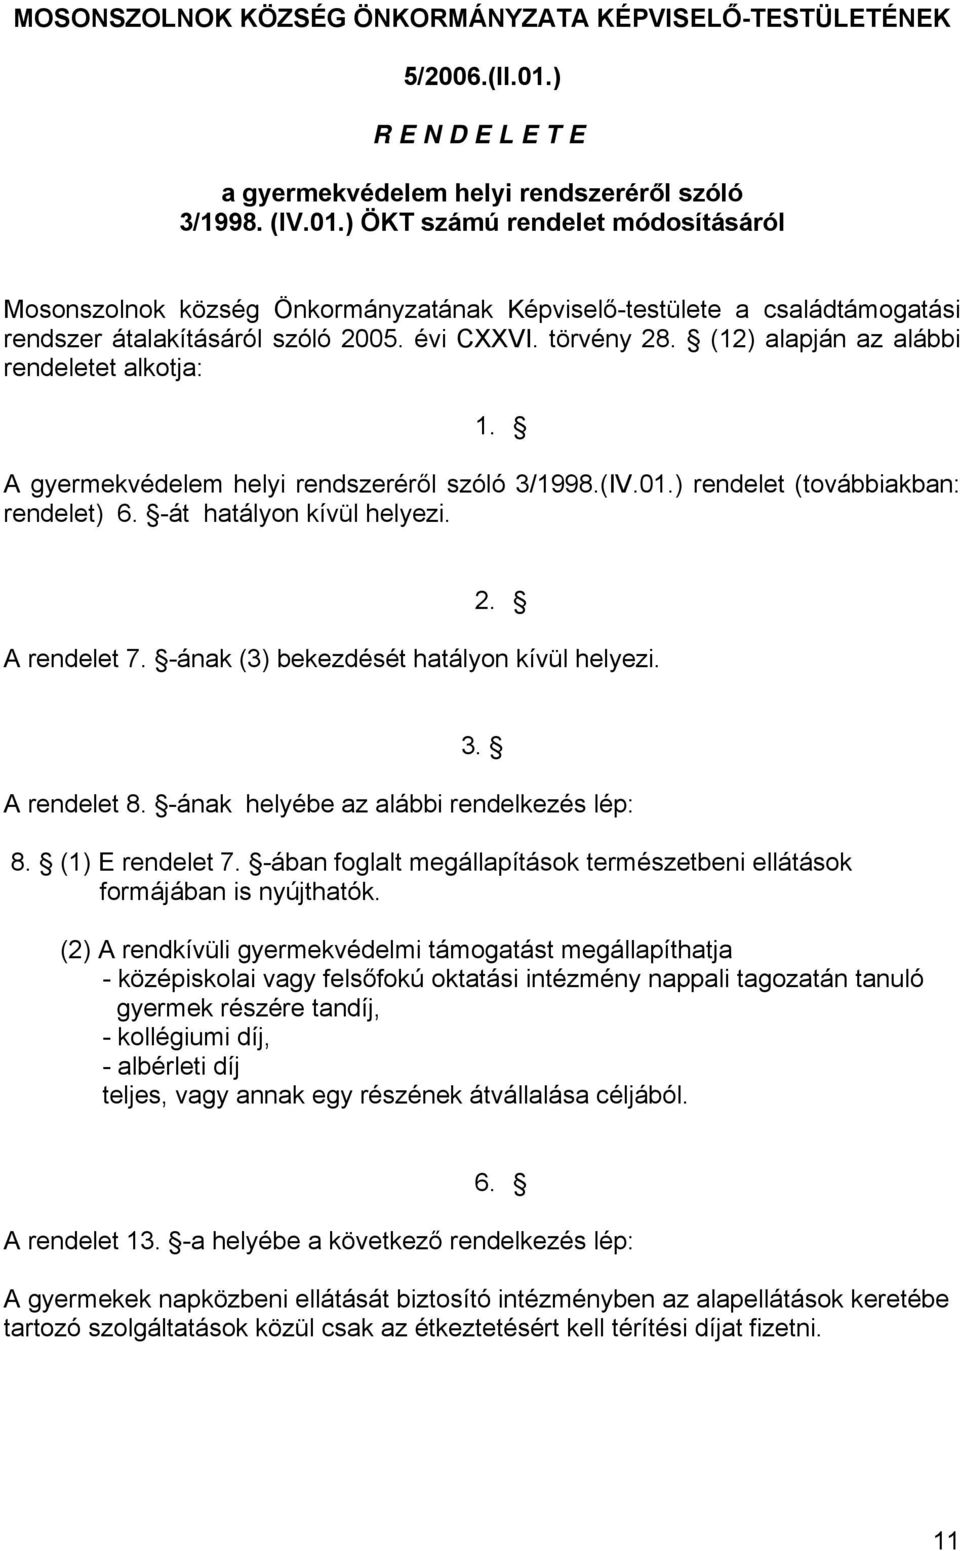 ) ÖKT számú rendelet módosításáról Mosonszolnok község Önkormányzatának Képviselő-testülete a családtámogatási rendszer átalakításáról szóló 2005. évi CXXVI. törvény 28.